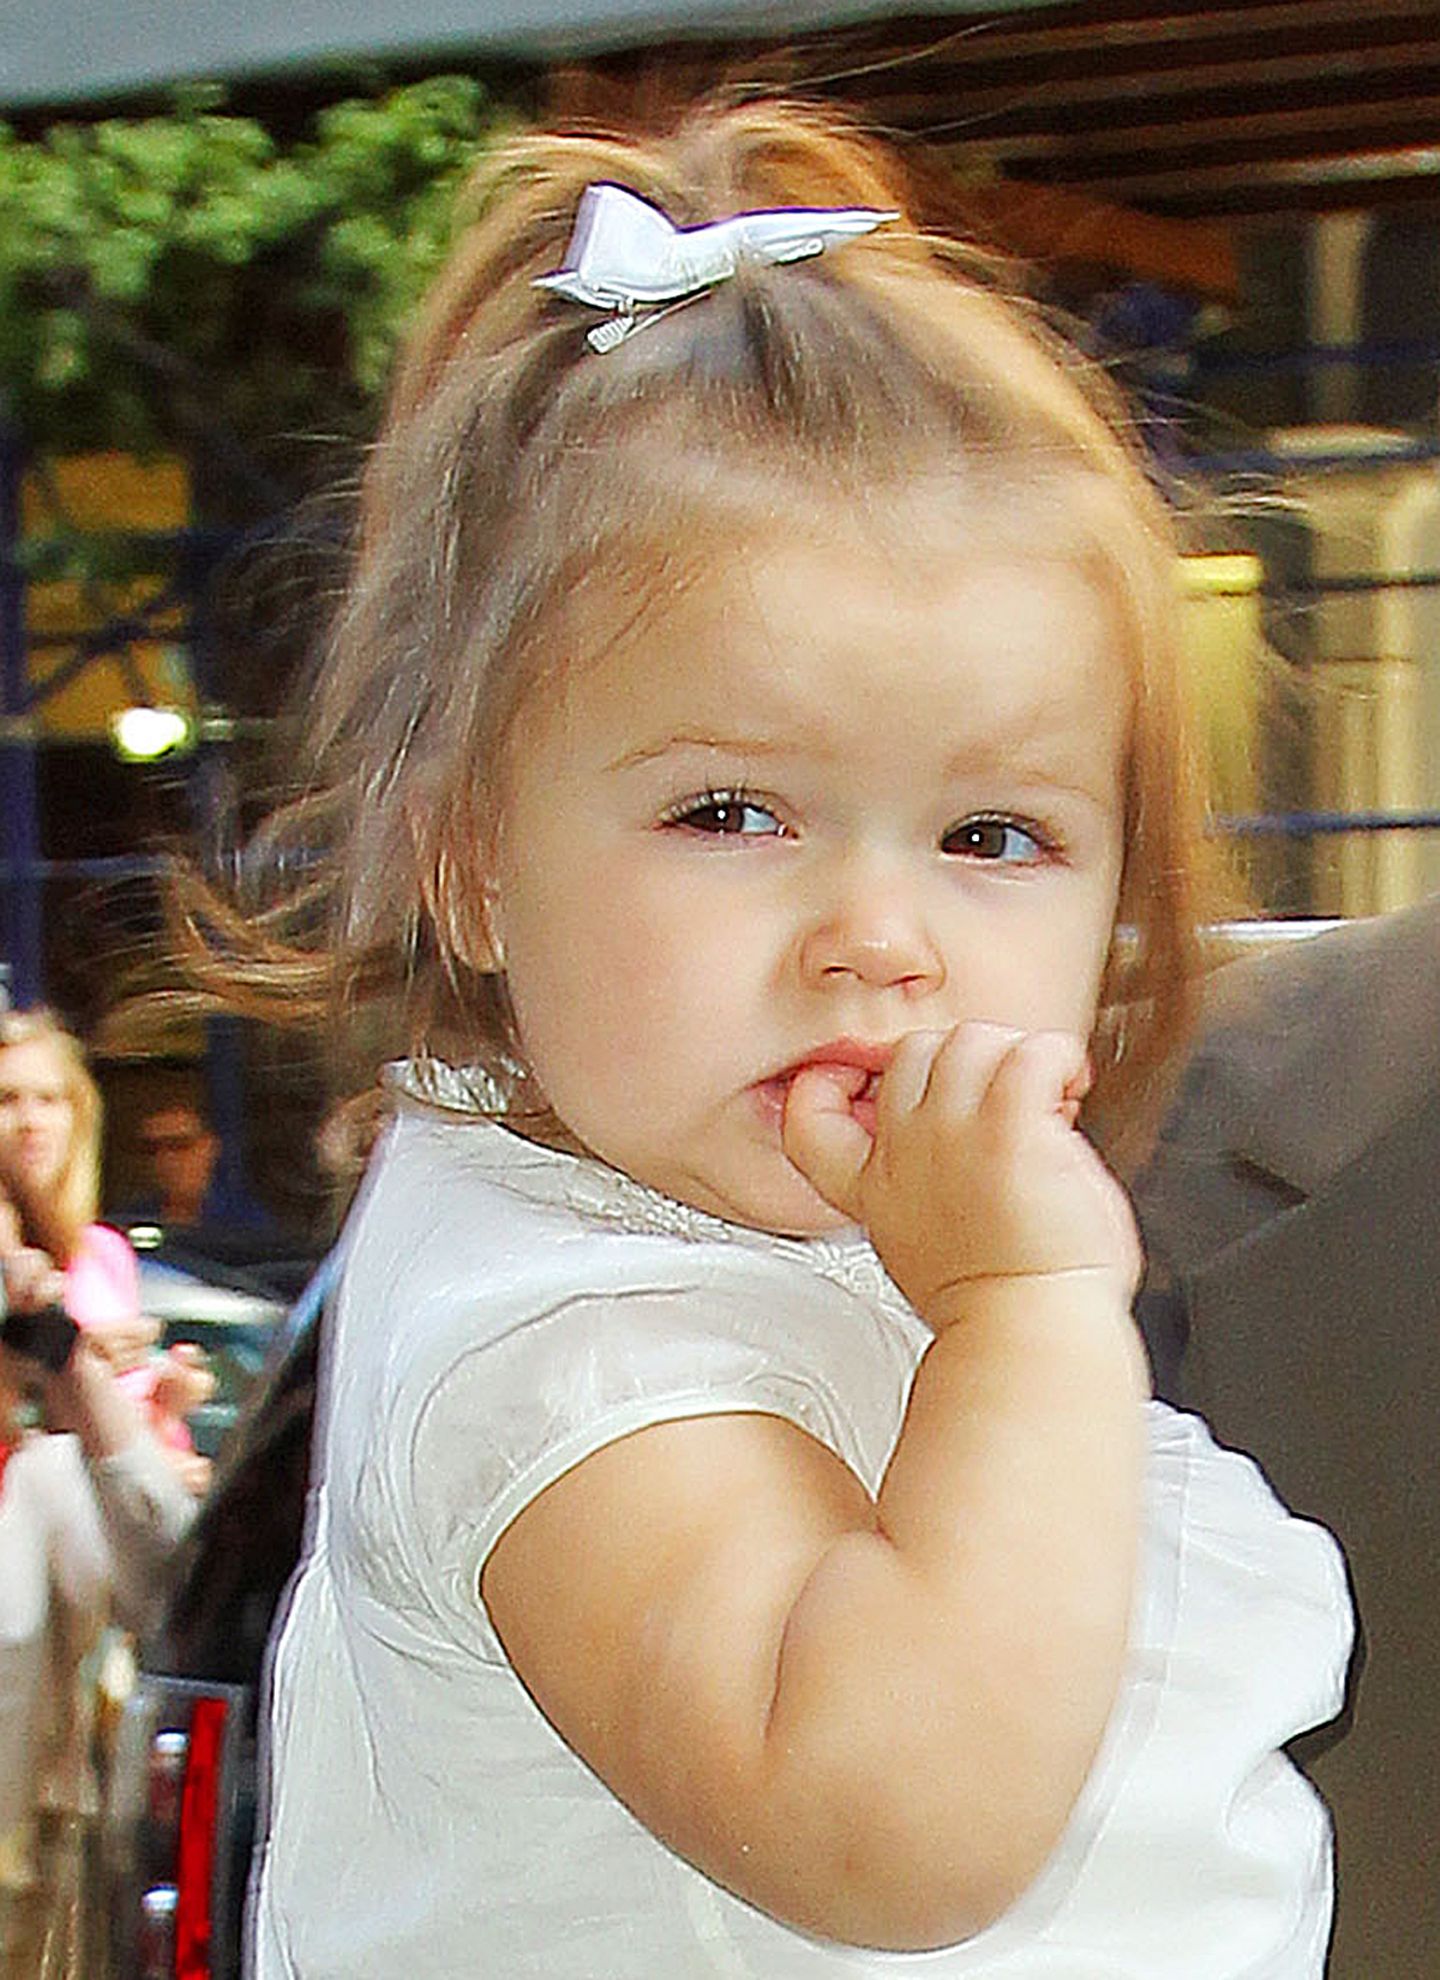 Natürlich geht auch die Tochter der wohl größten Stil-Ikone Hollywoods mit dem Trend. Victoria Beckham stylt ihre putzige Tochter Harper mit süßem Schleifchen.